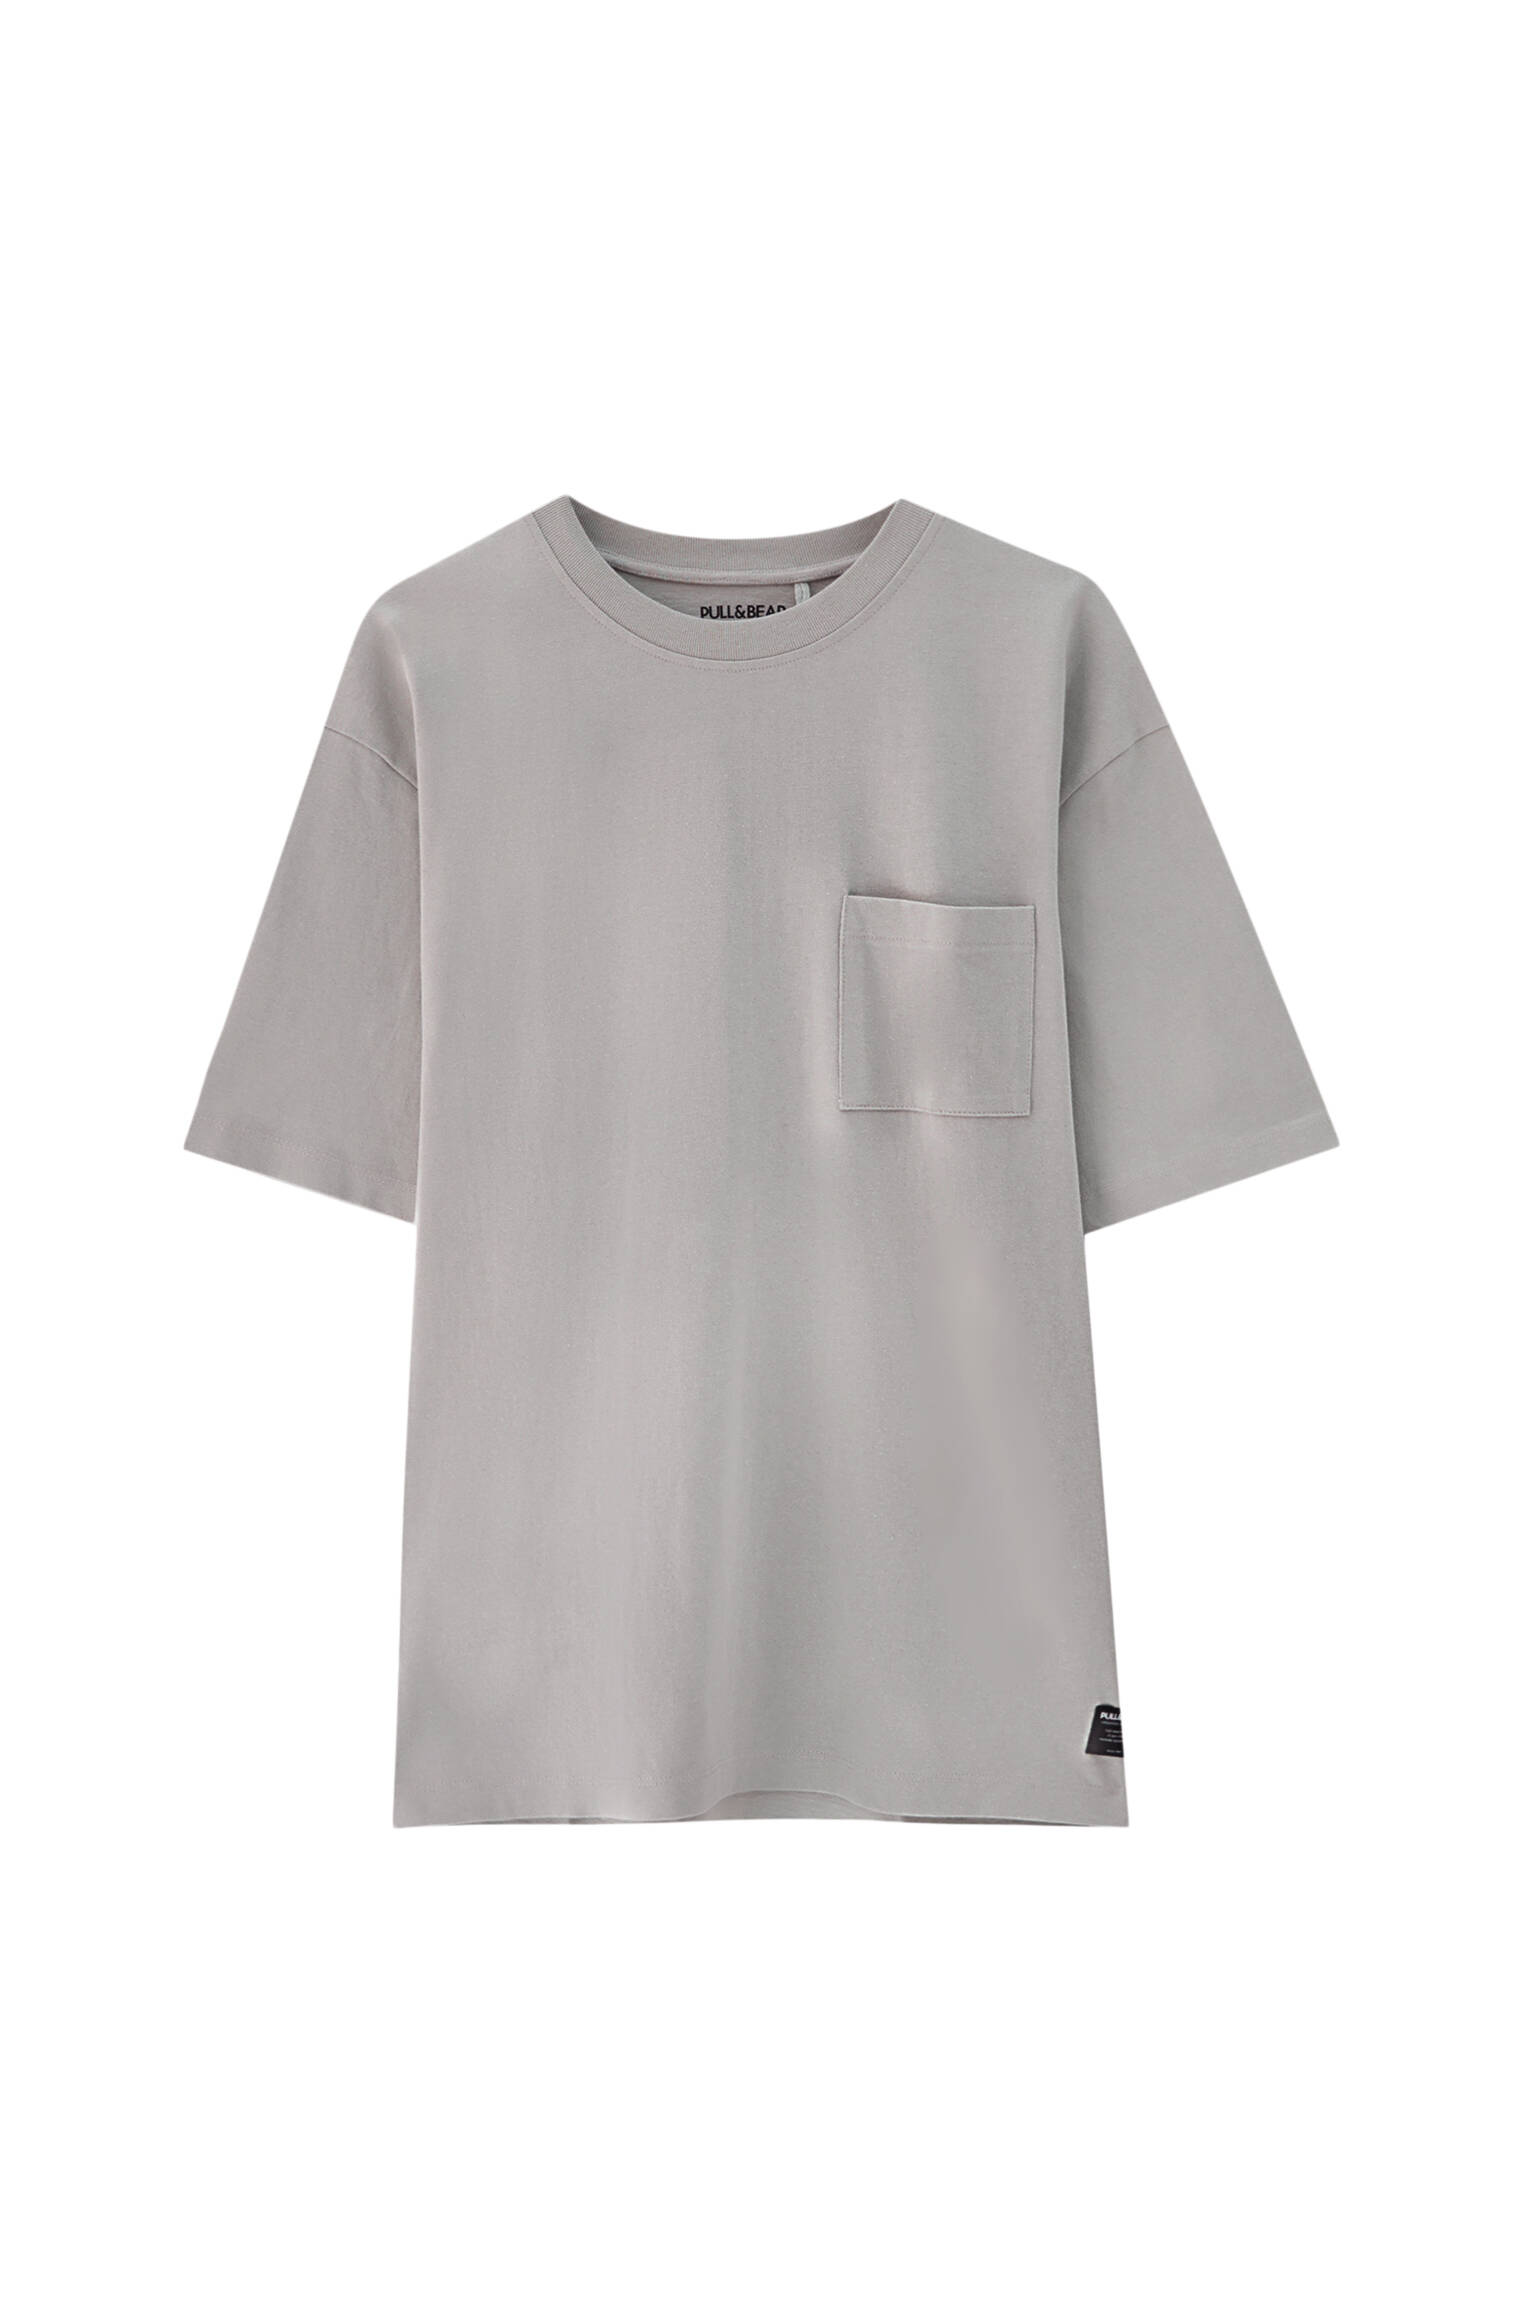 Pull&bear Homme T-shirt Oversize En Coton Premium, à Manches Courtes Et Col Rond. Gris Taupe L